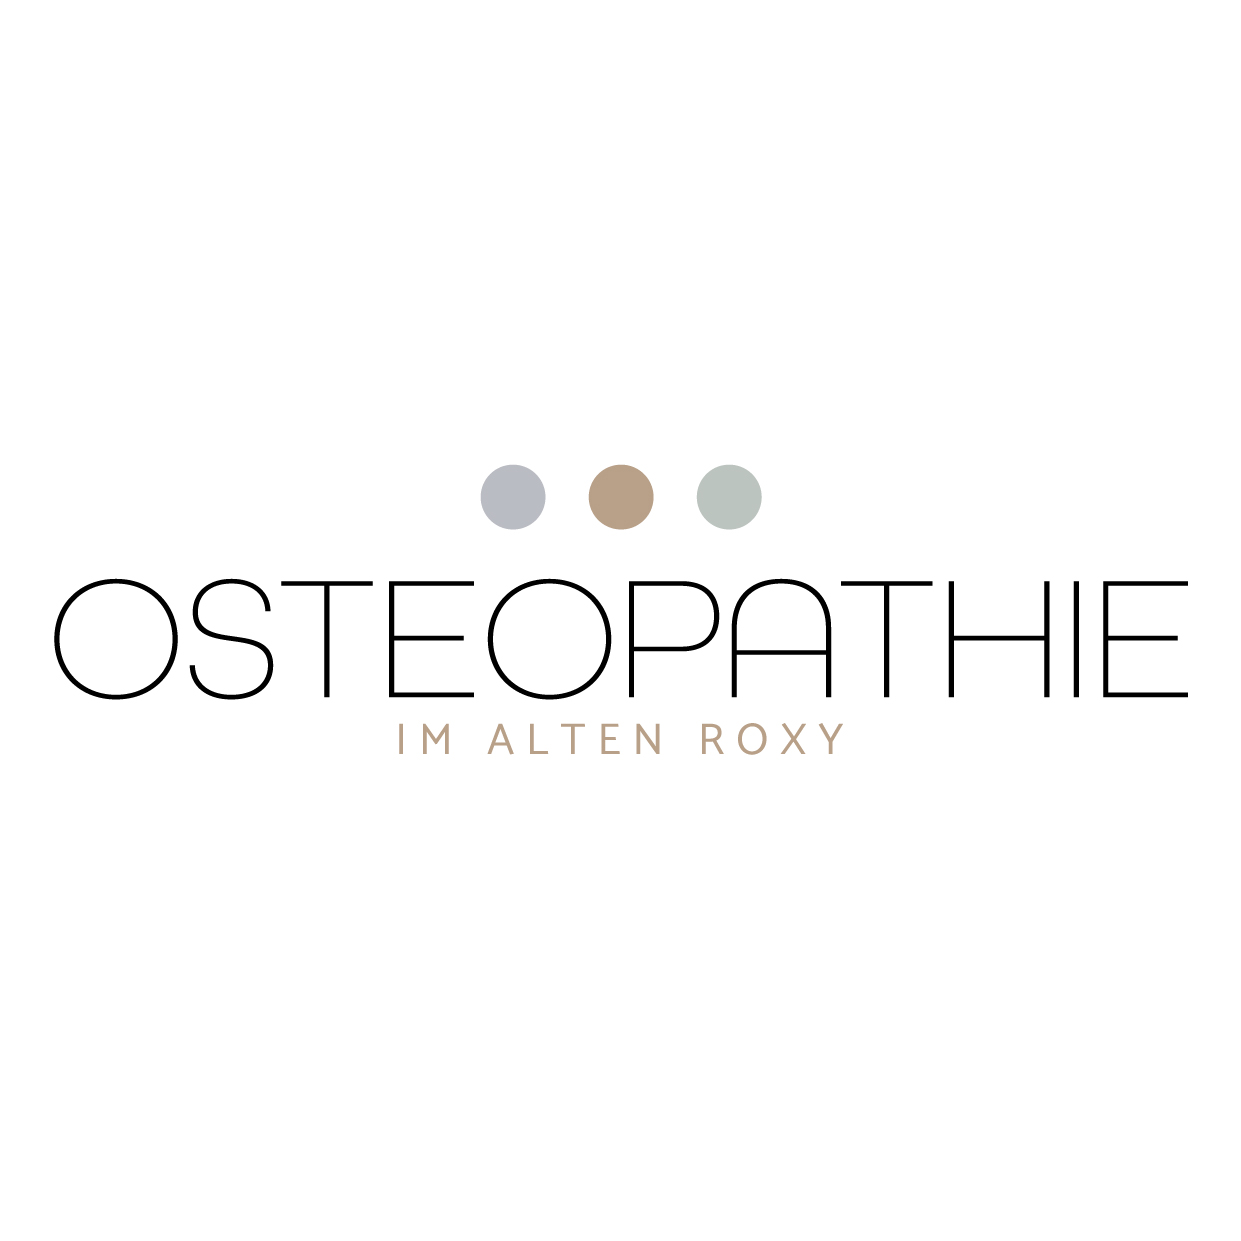 Osteopathie im alten Roxy